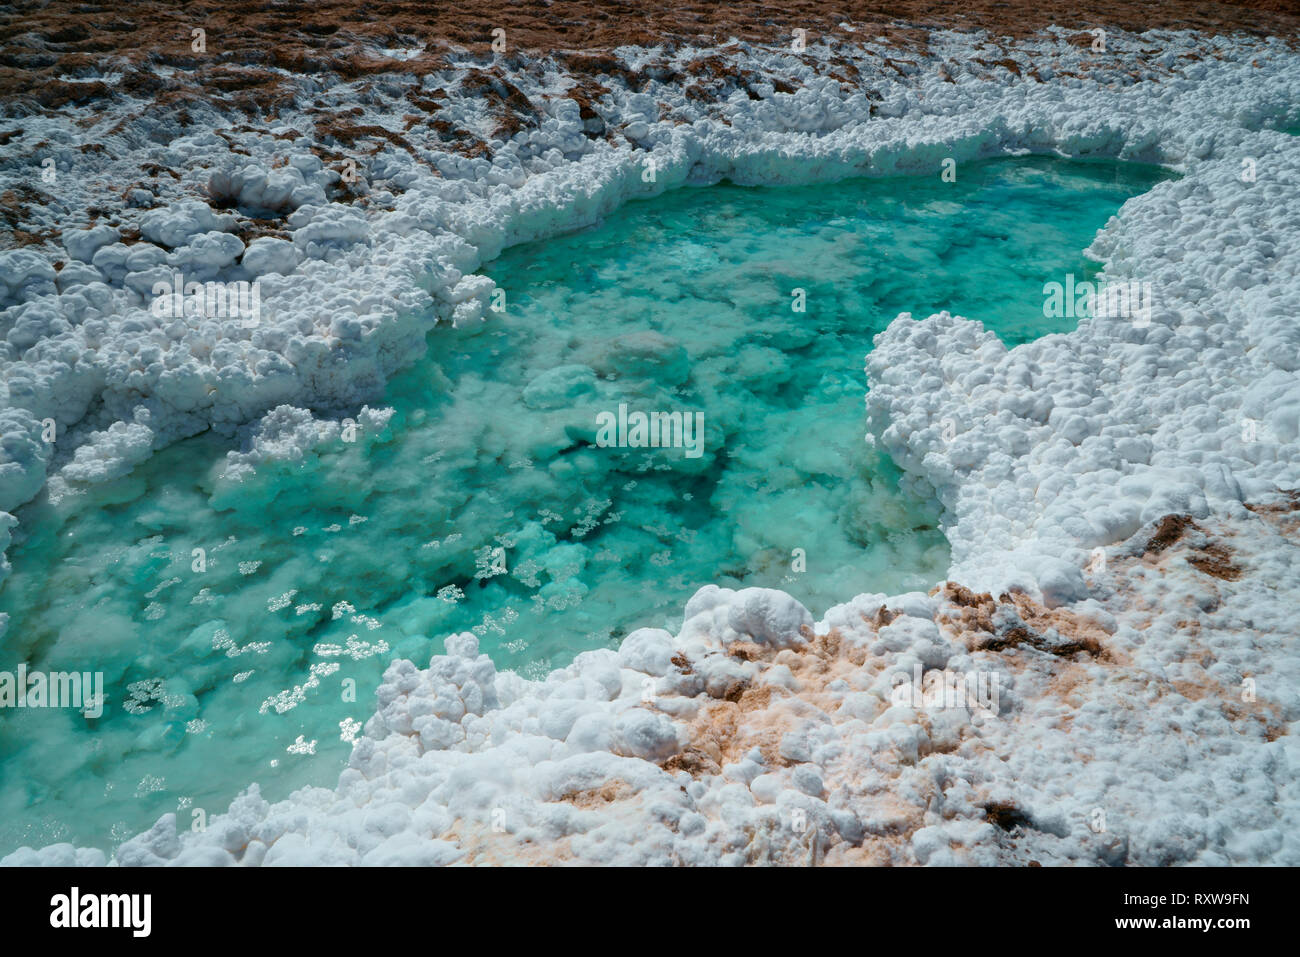 Salt Creek, près de San Pedro de Atacama, le tissu blanc est le chlorure de sodium, recueillies par l'eau d'une source d'eau chaude volcanique voisine. Les montagnes des Andes, Chili, Amérique du Sud Banque D'Images